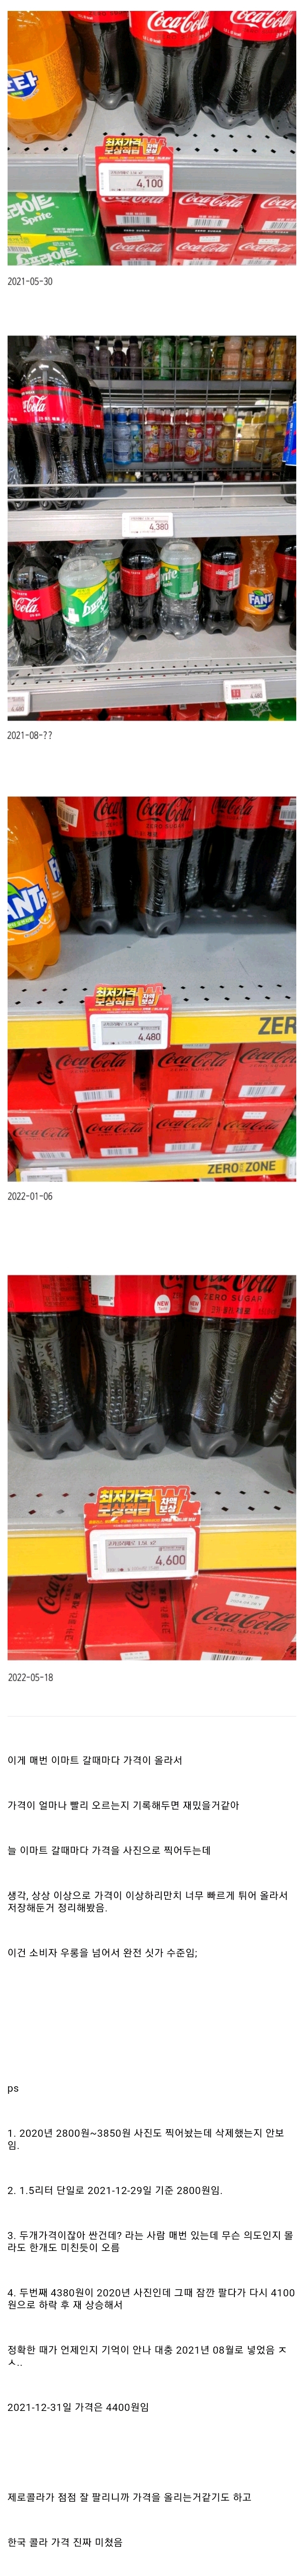 5 코카콜라 제로 가격상승 속도.jpg